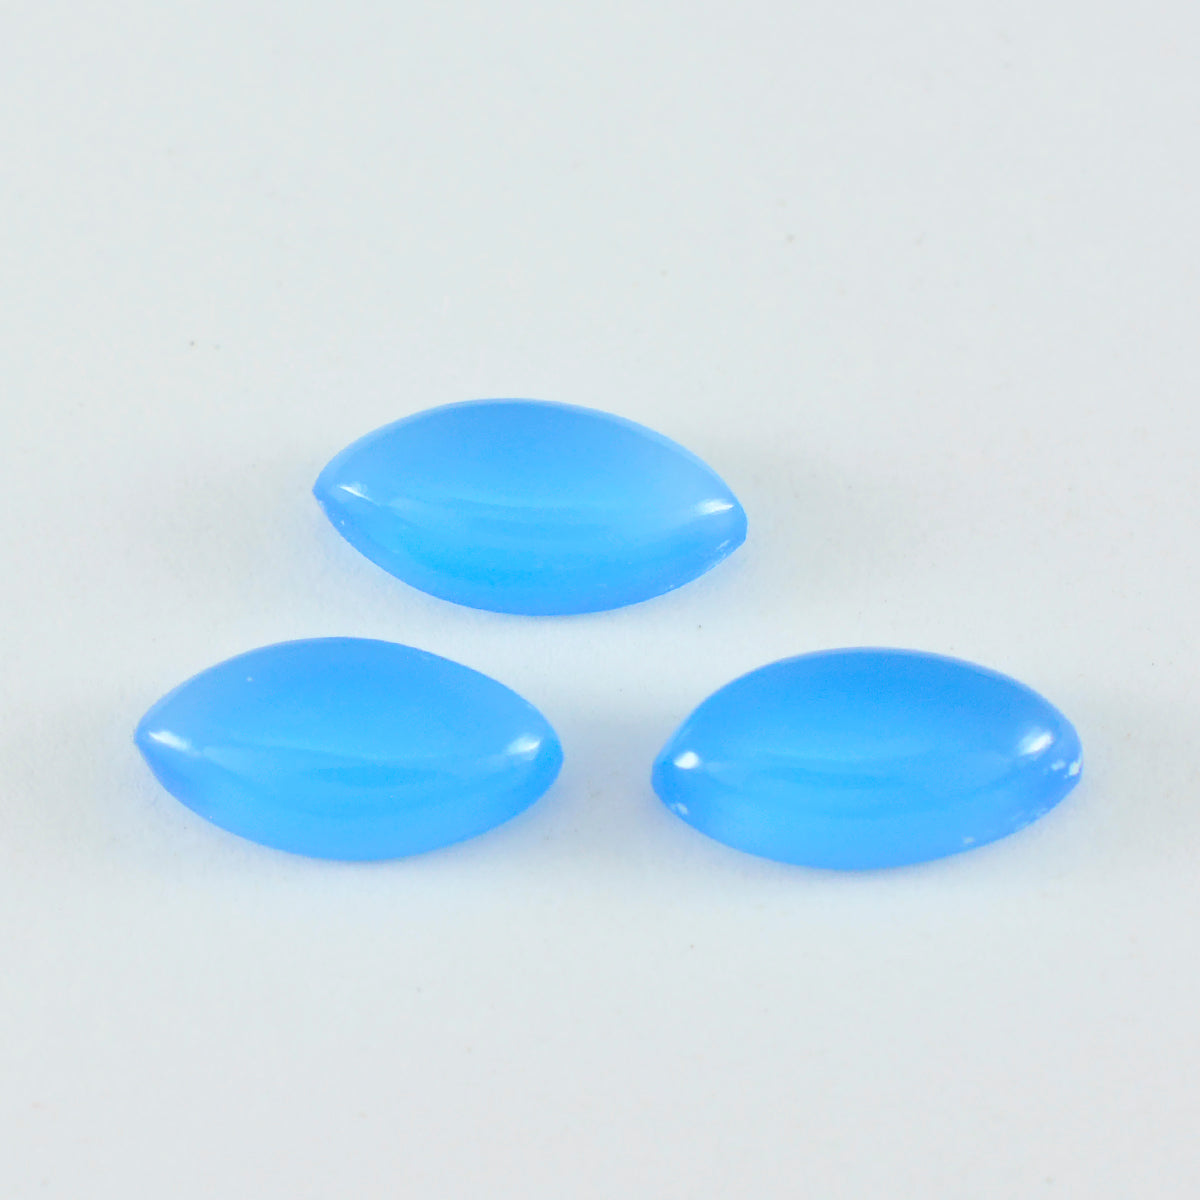 Riyogems 1pc calcédoine bleue cabochon 6x12mm forme marquise belle qualité pierre précieuse en vrac